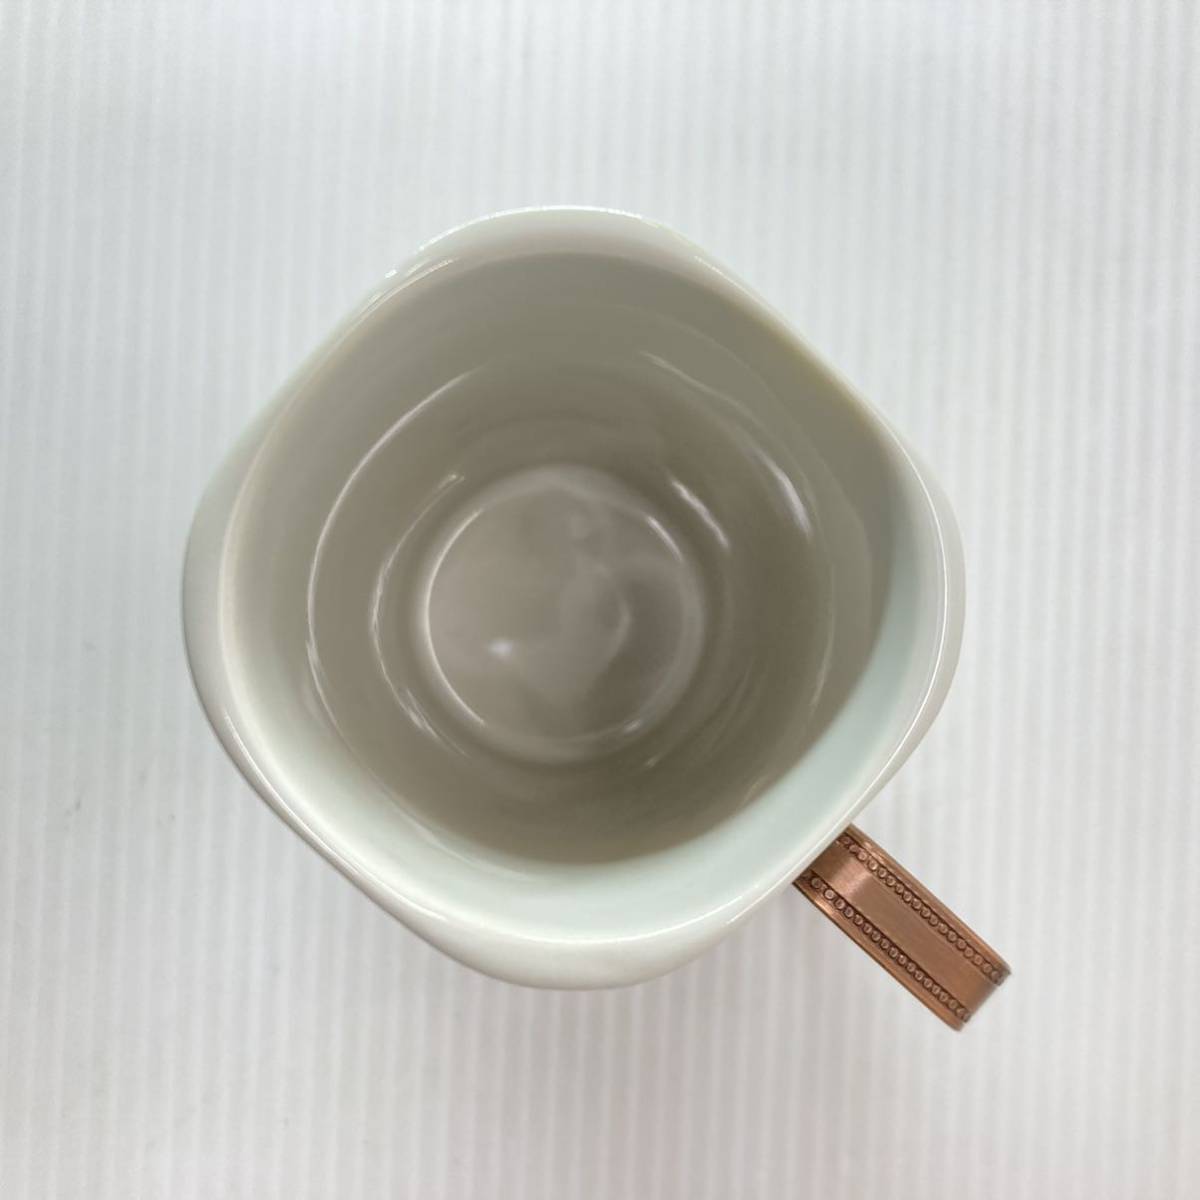 EVENING ドリンクセット 陶磁器 カップ 金属製 ホルダー 5客セット 5個組 未使用 コーヒー ティー お茶 コップ 食器_画像4